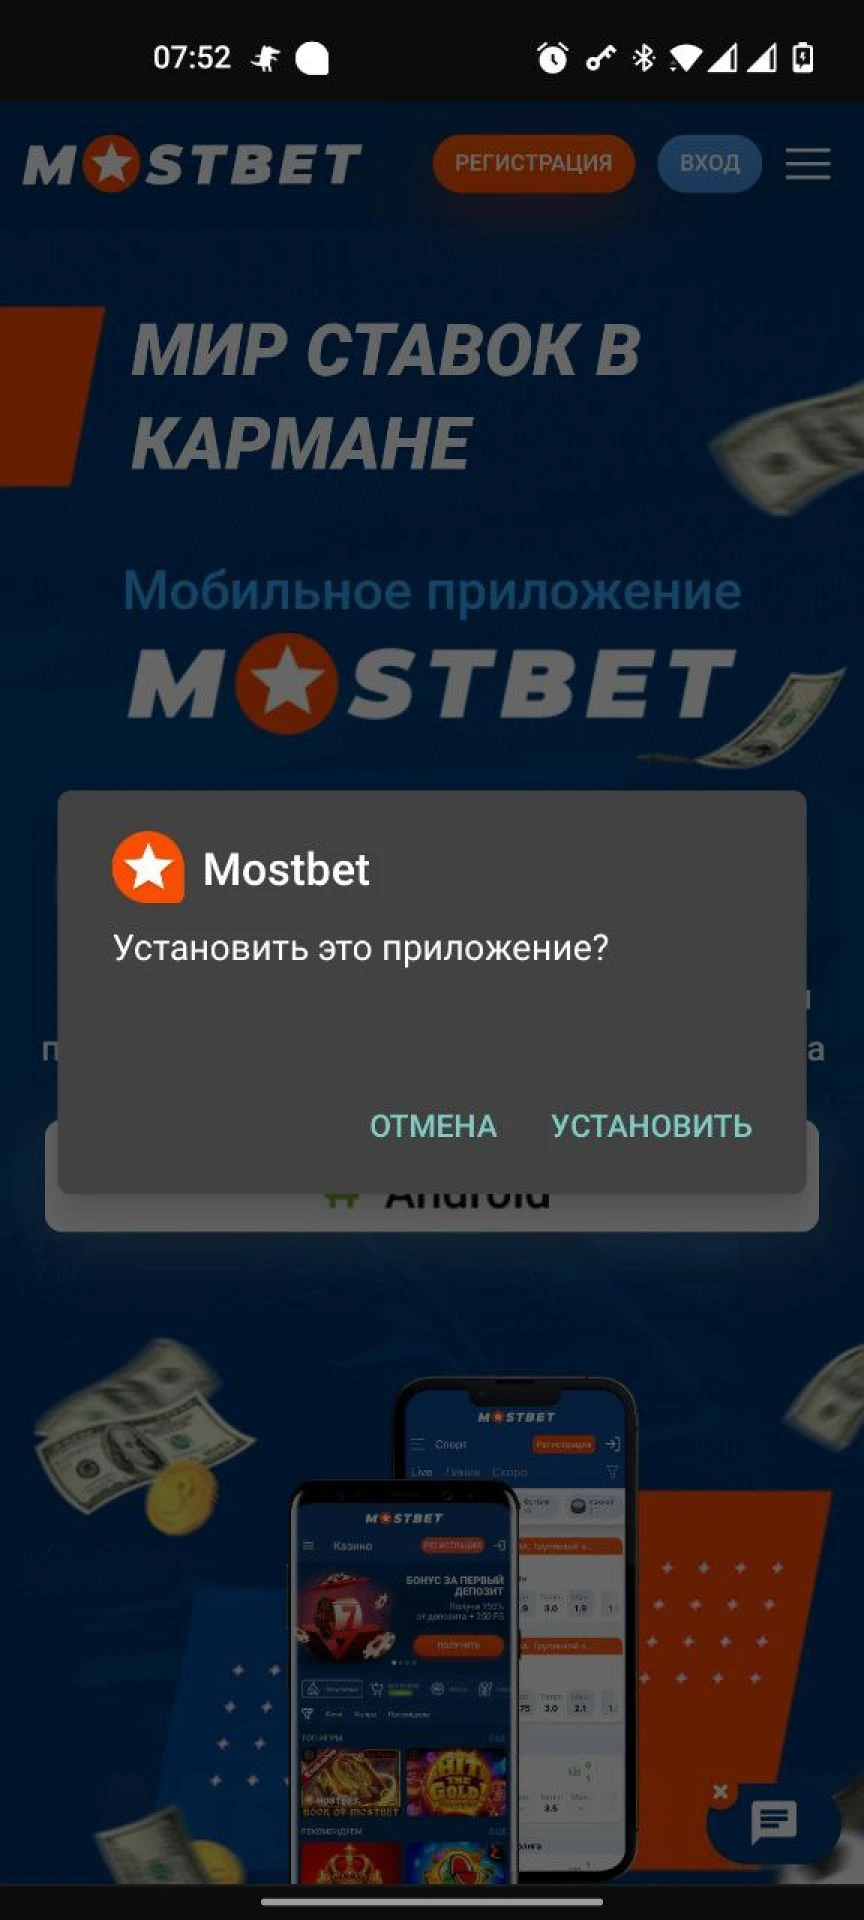 Начните установку приложения Mostbet для Android.